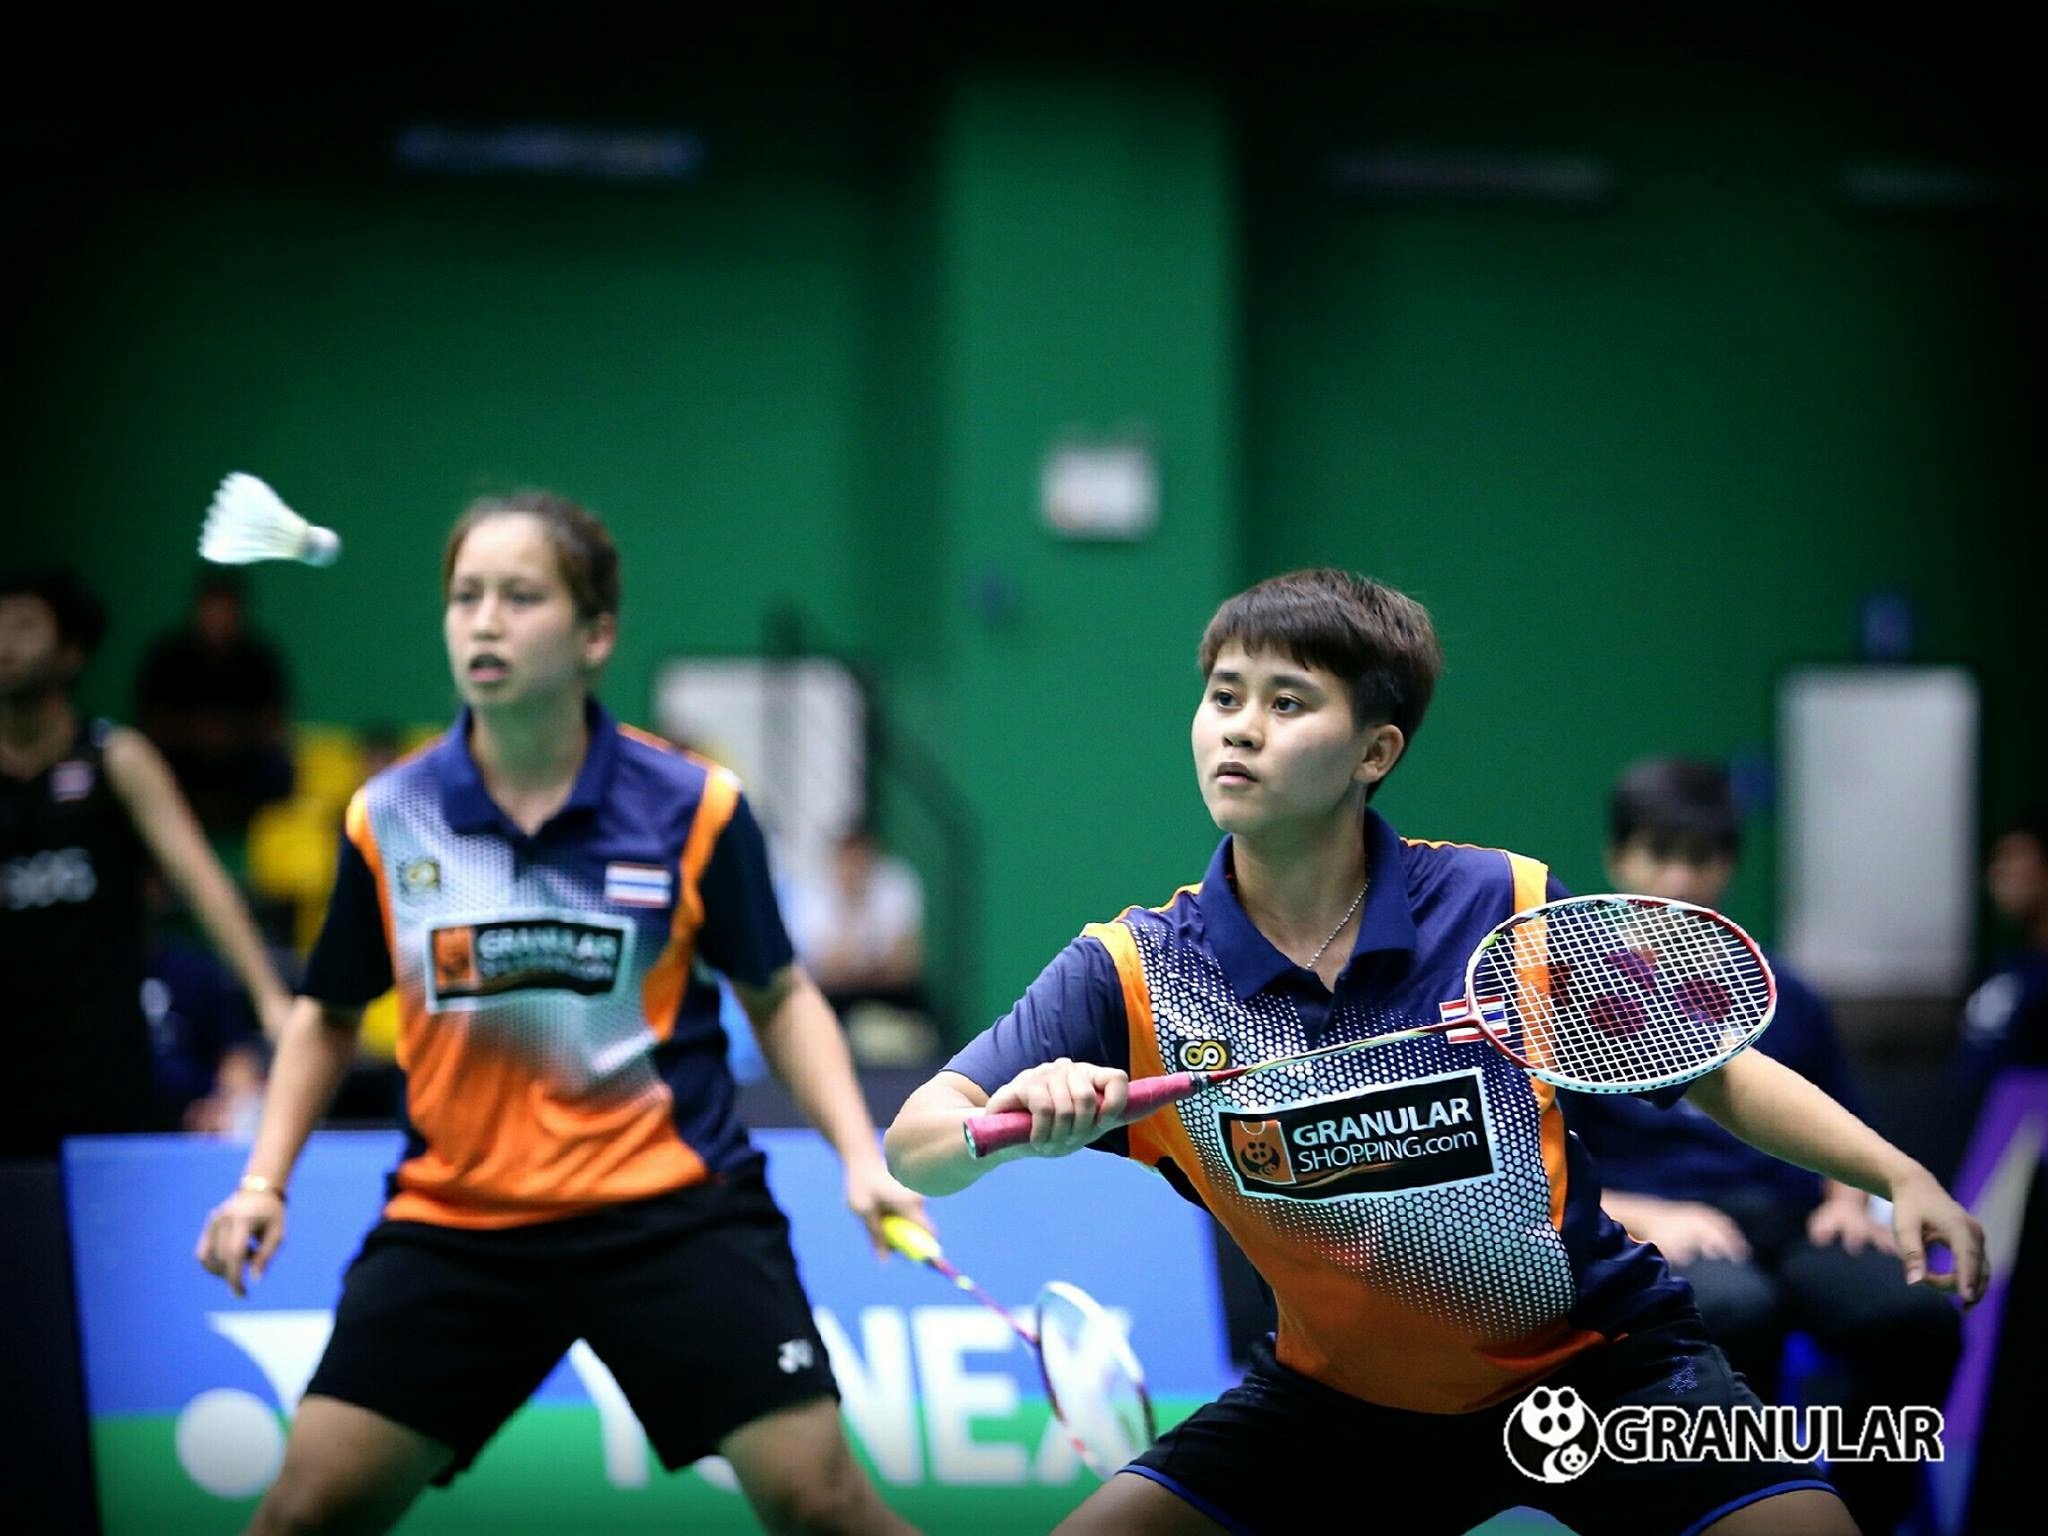 เบสท์-จ่อมแจ๋ม ออกตัวดีชนะคู่สาวจากอินโดนีเซีย 2:1 เกมส์ ในศึก OUE Singapore Open